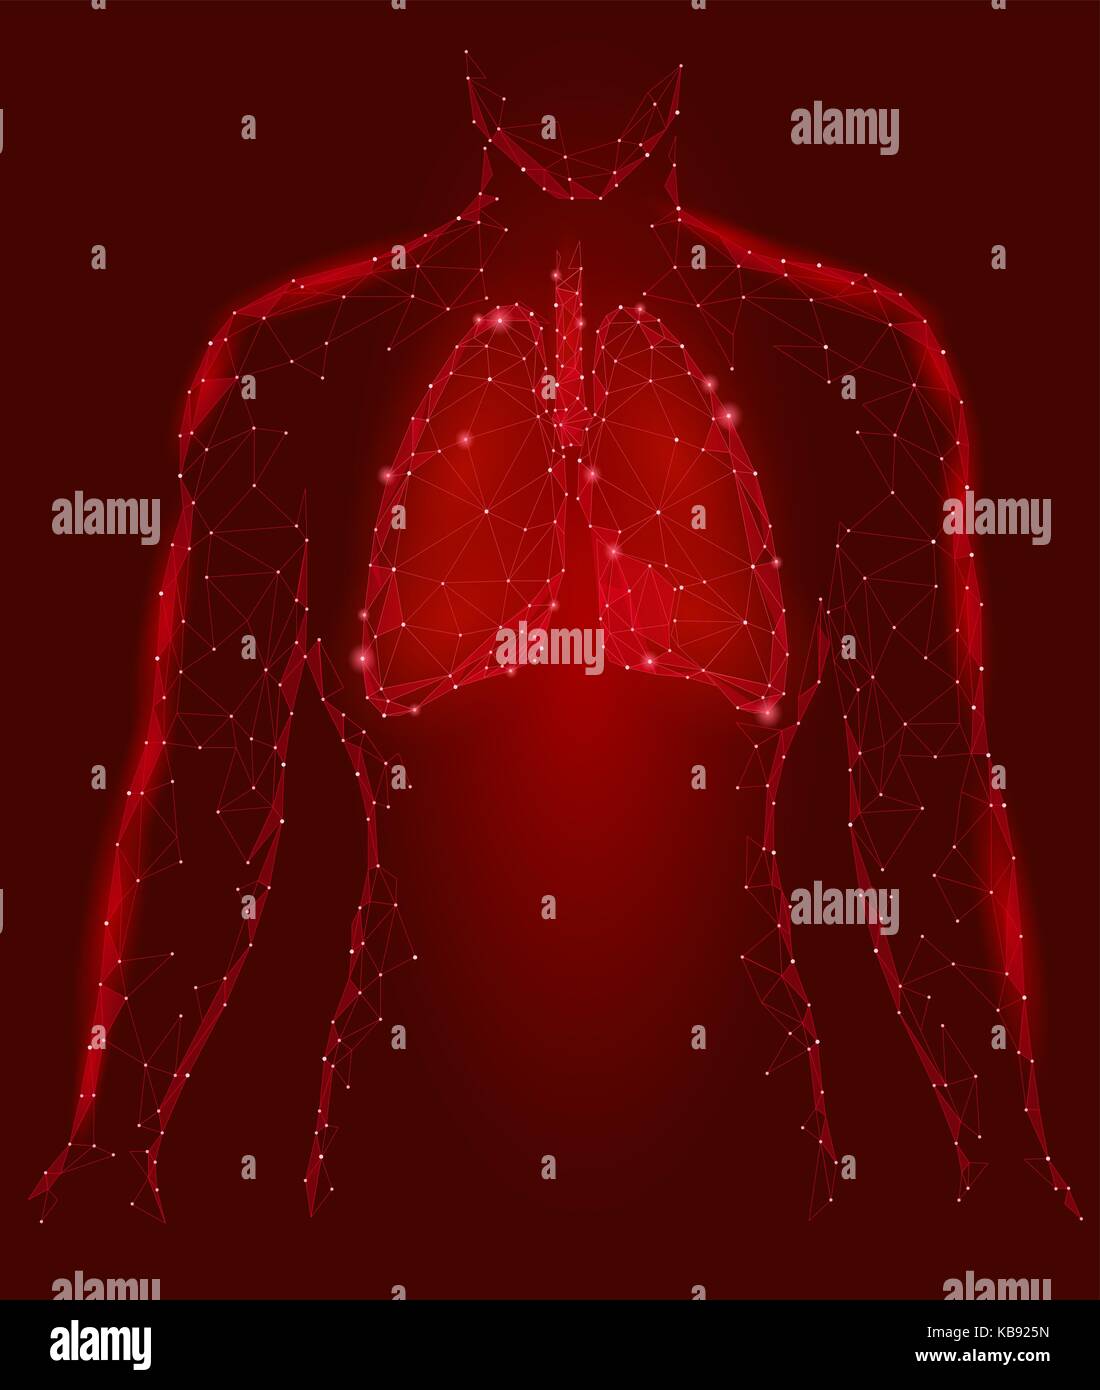 Menschliche Lungen internen Organ. Atemwege im Körper Silhouette. Low Poly 3d angeschlossen Dots Dreieck polygonalen Design. Rote Farbe Hintergrund Vector Illustration Stock Vektor